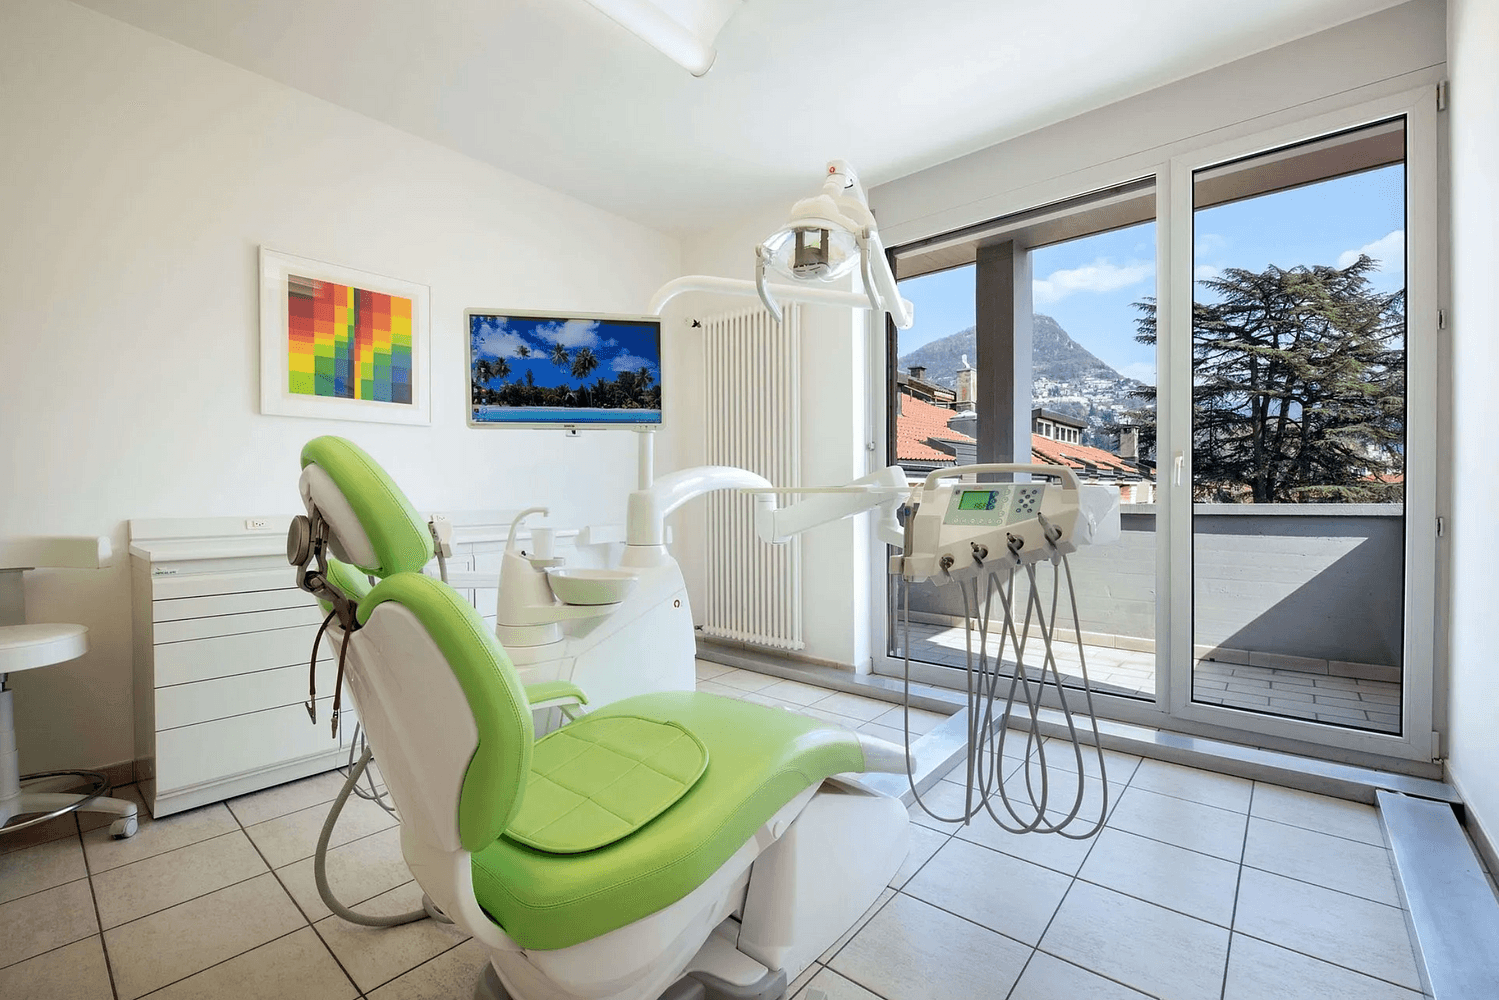 Studio dentistico dr. med. Airoldi Giulio Lugano 091 921 40 41